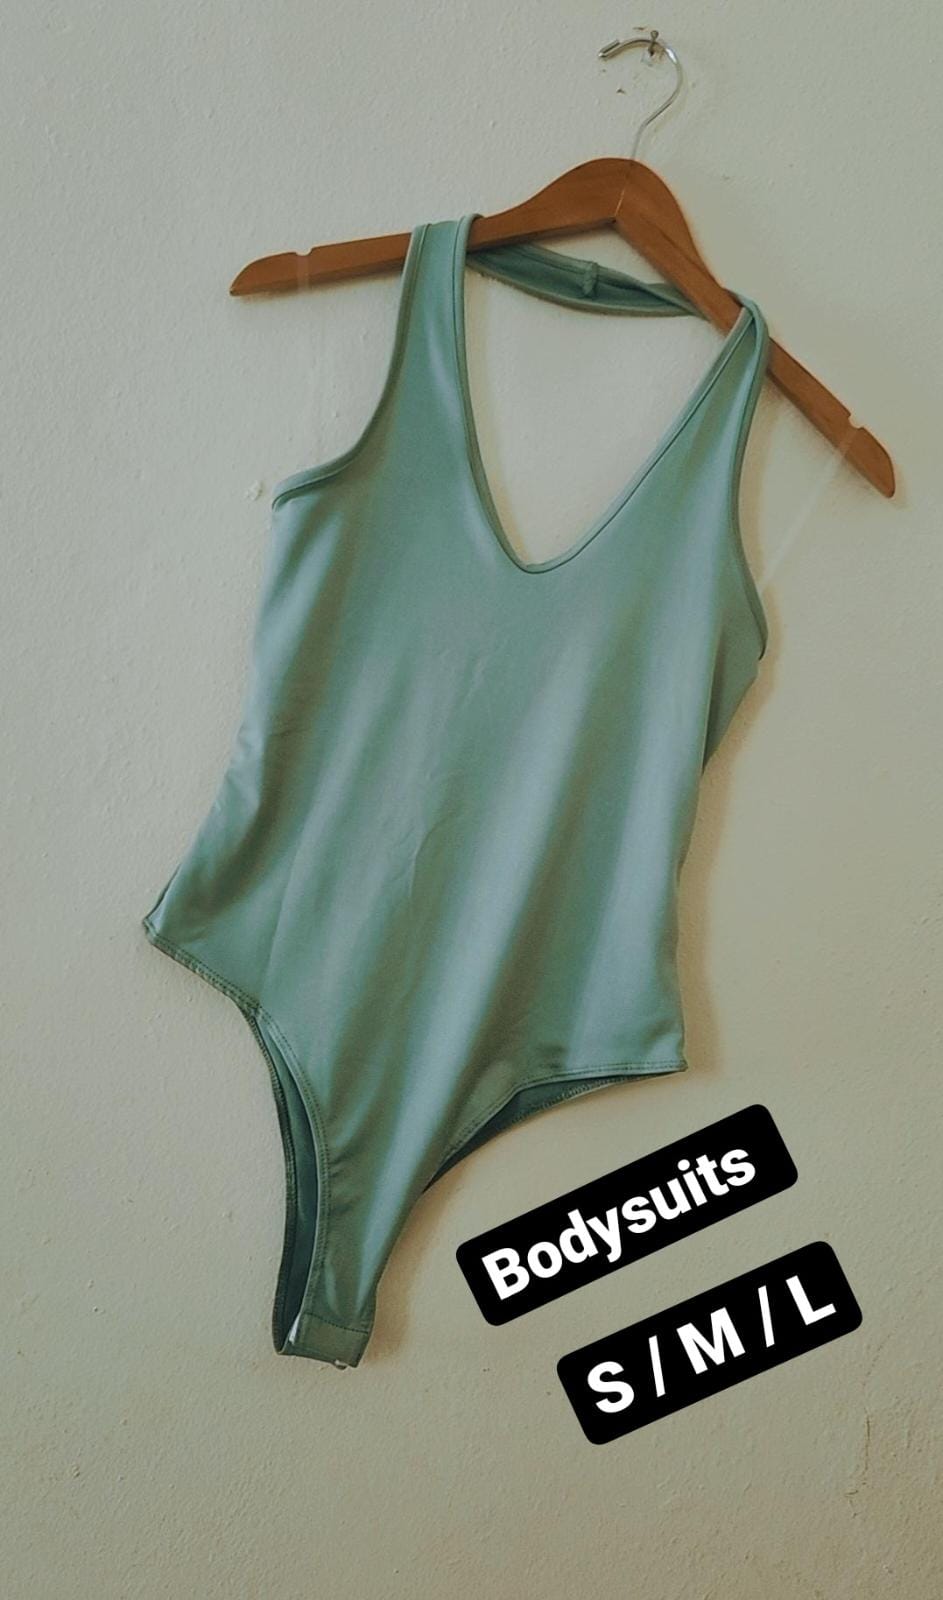 Claudia Bodysuits